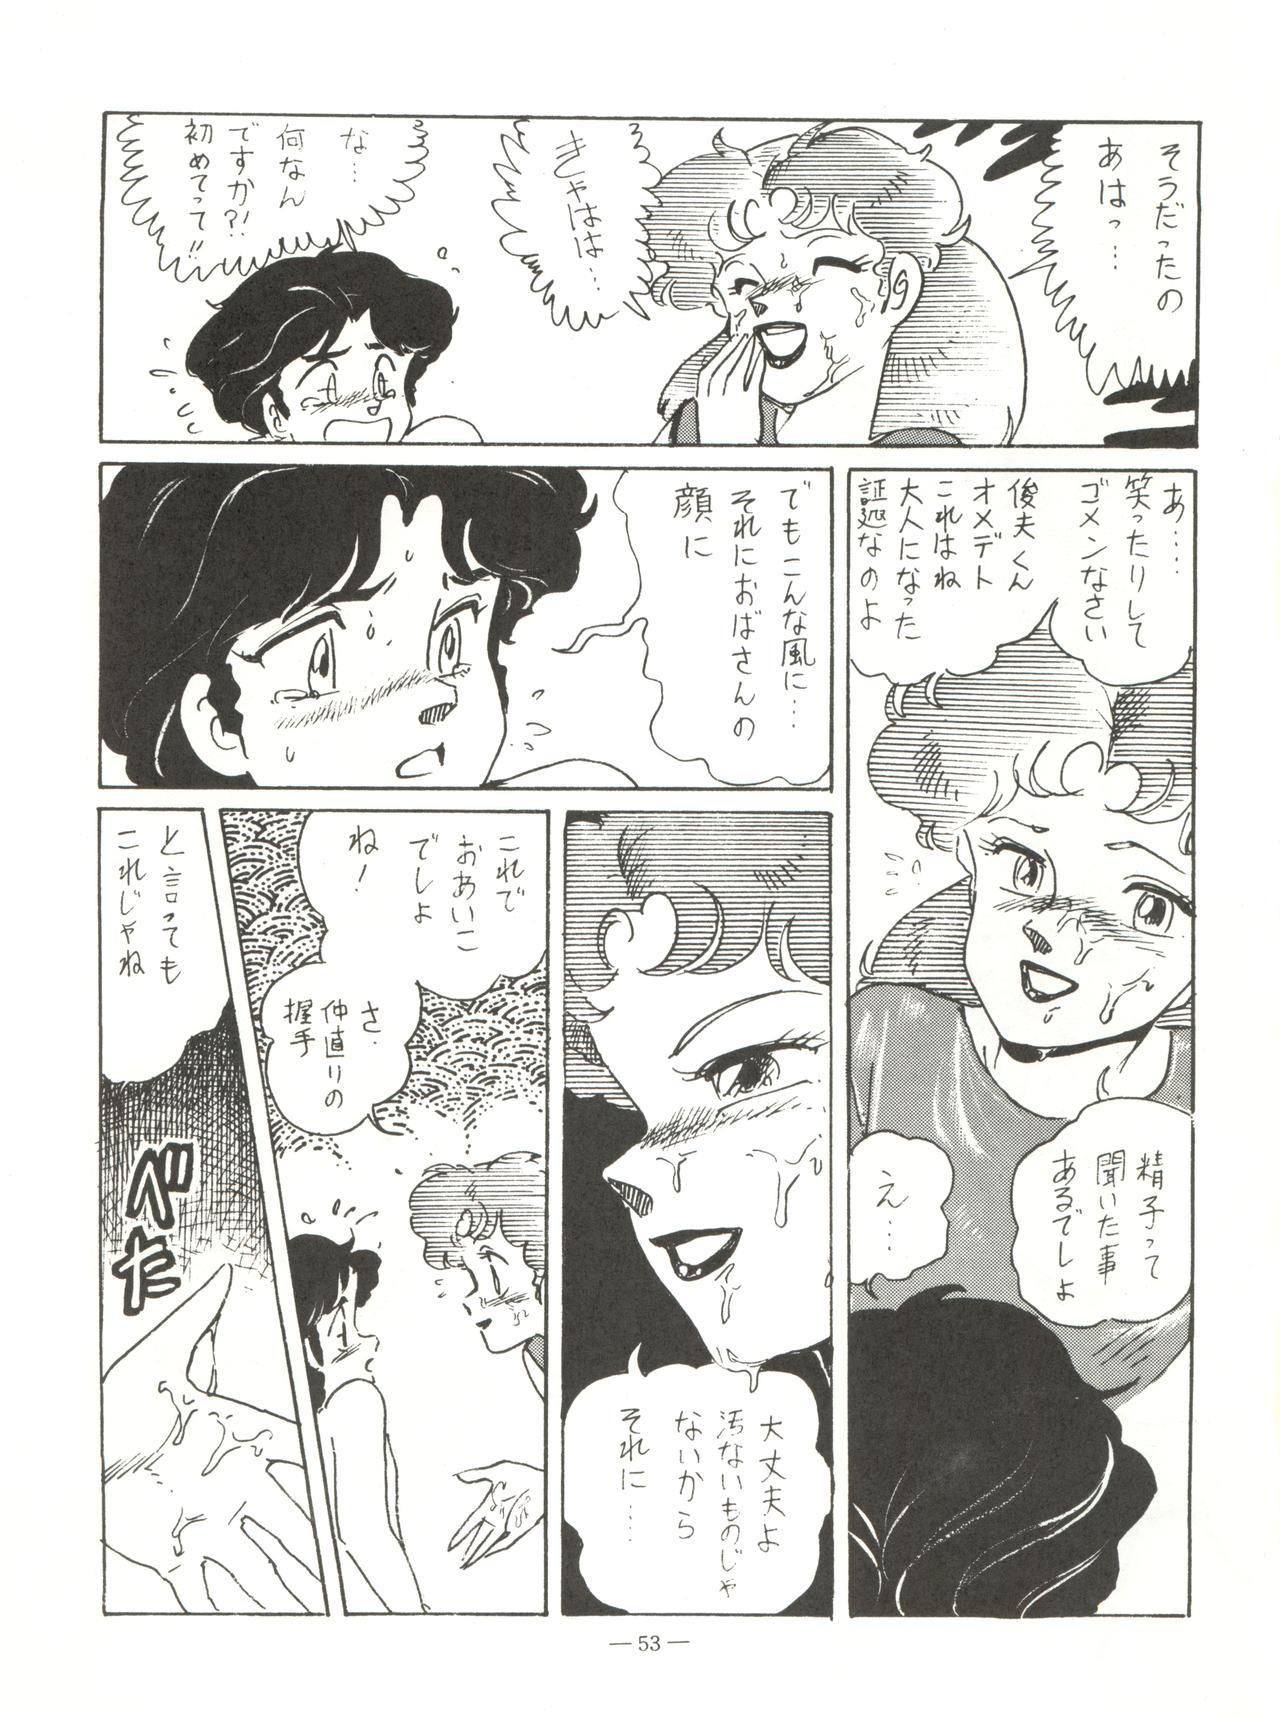 新鮮なミセス自身の微笑 Vol.1 52